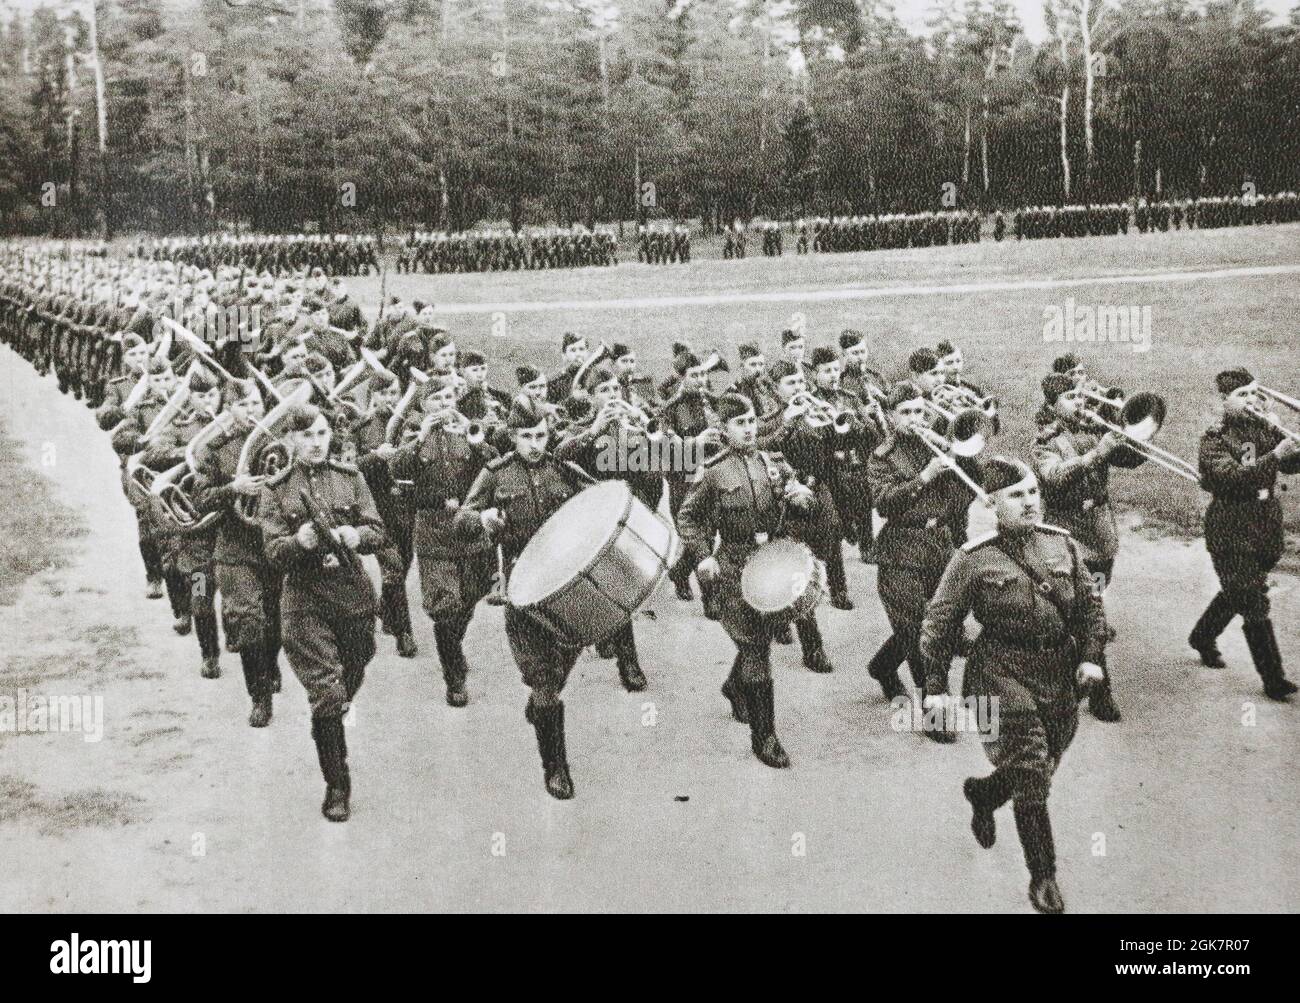 L'unità militare russa con un'orchestra ritorna al campo dall'addestramento tattico negli anni '60. Foto Stock